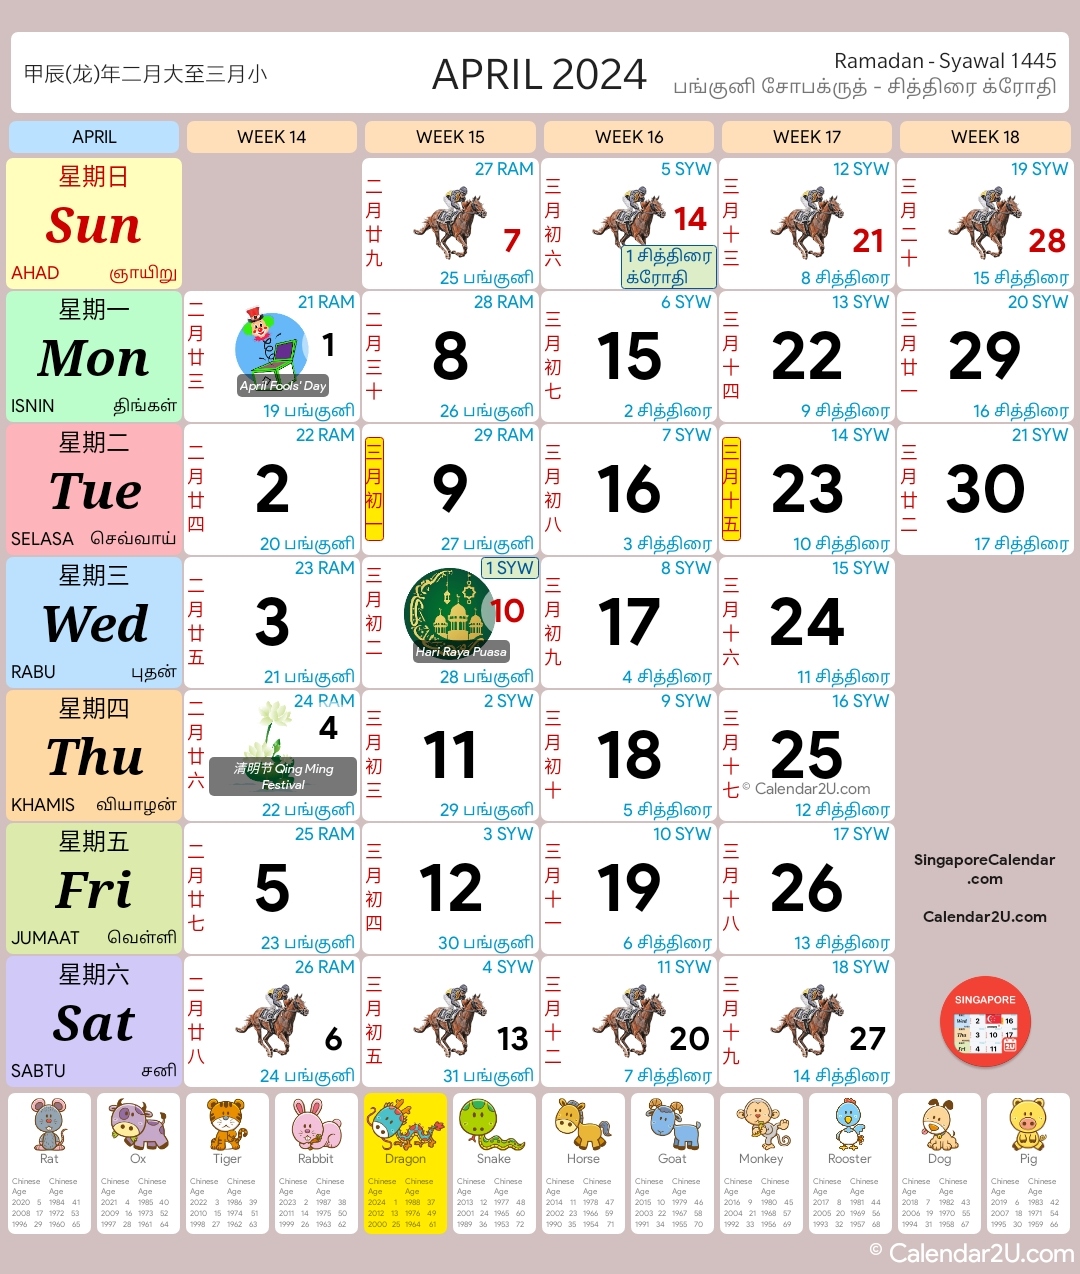 Singapore Calendar Year 2024 - Singapore Calendar for Free Printable Calendar 2024 Singapore